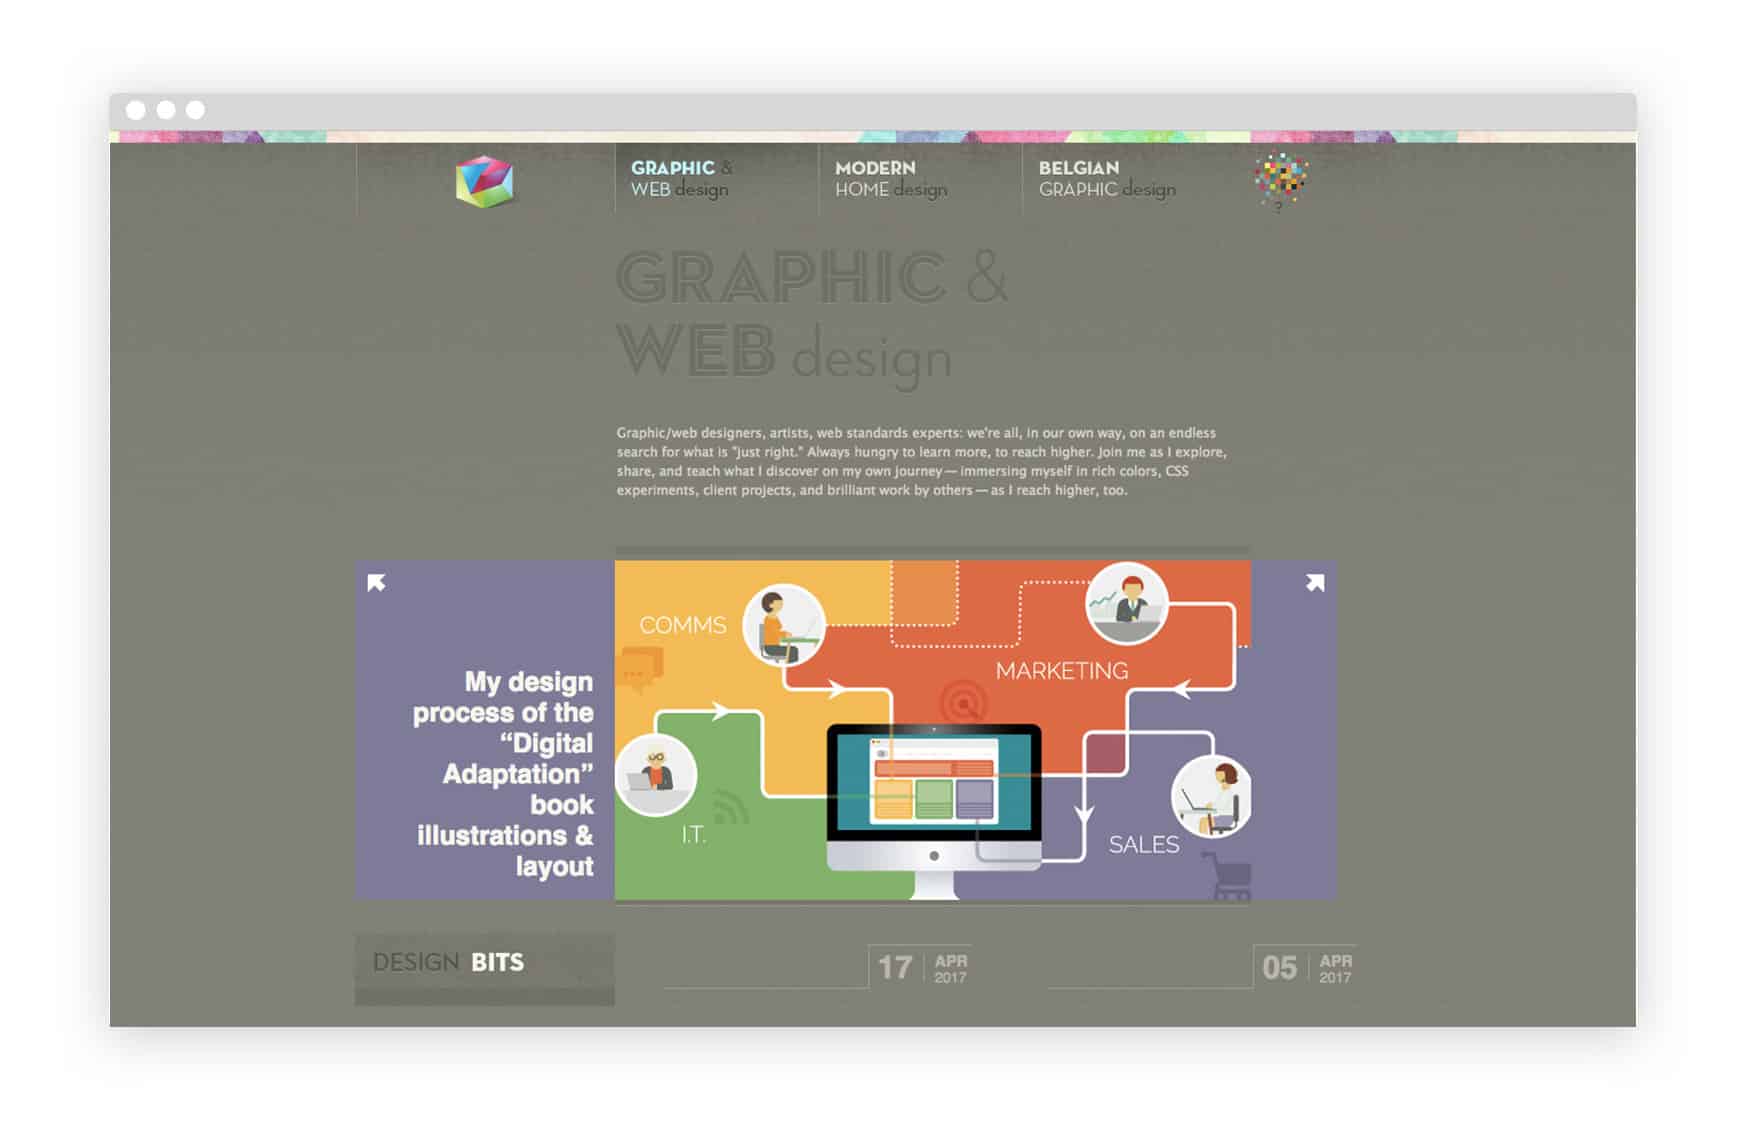 veerles-graphic-design-blog-free-graphic-design-courses